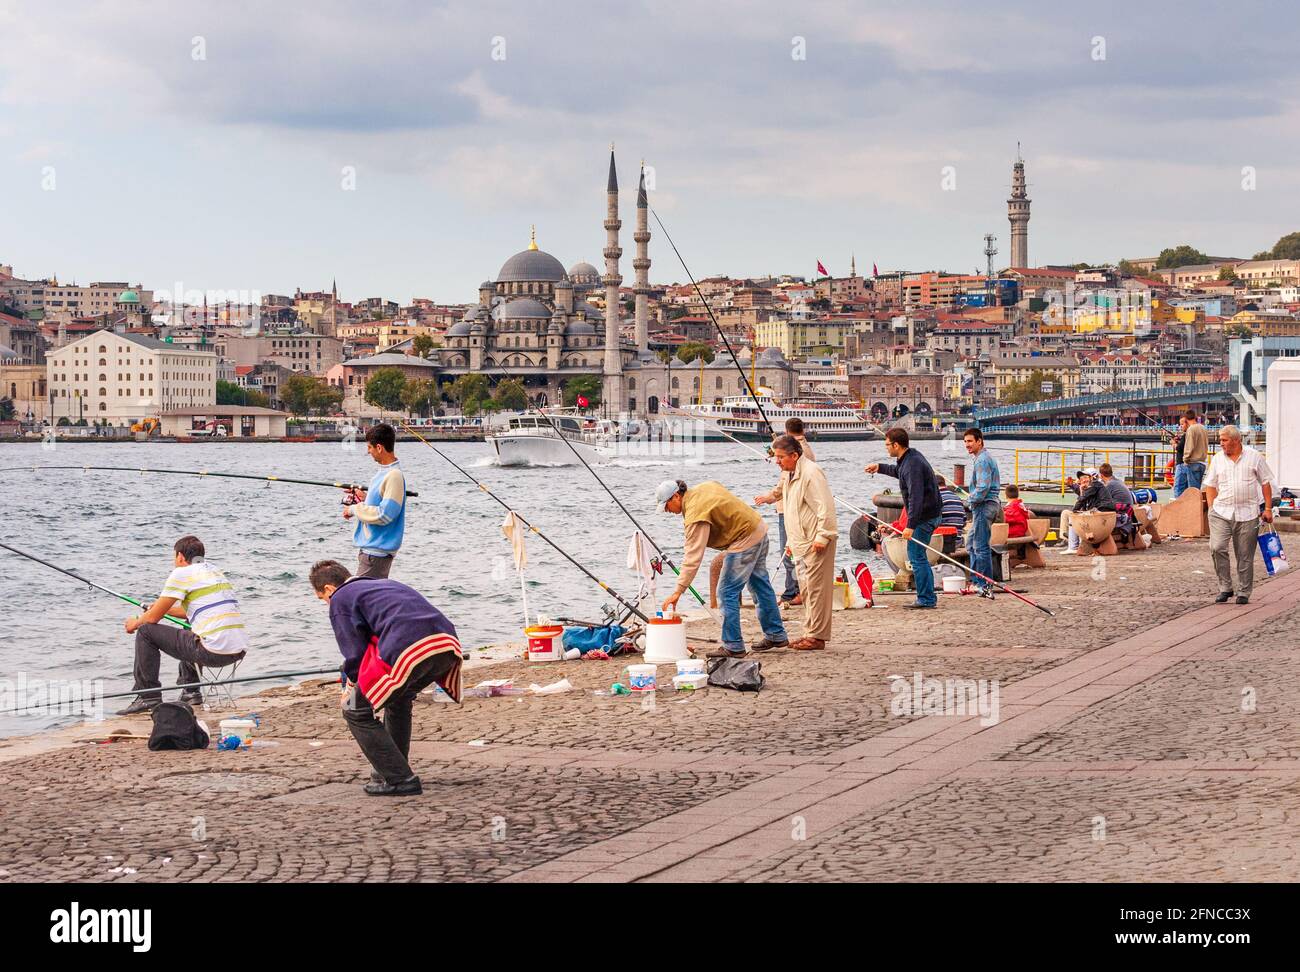 Angeln am Wasser in Istanbul Türkei Stockfoto